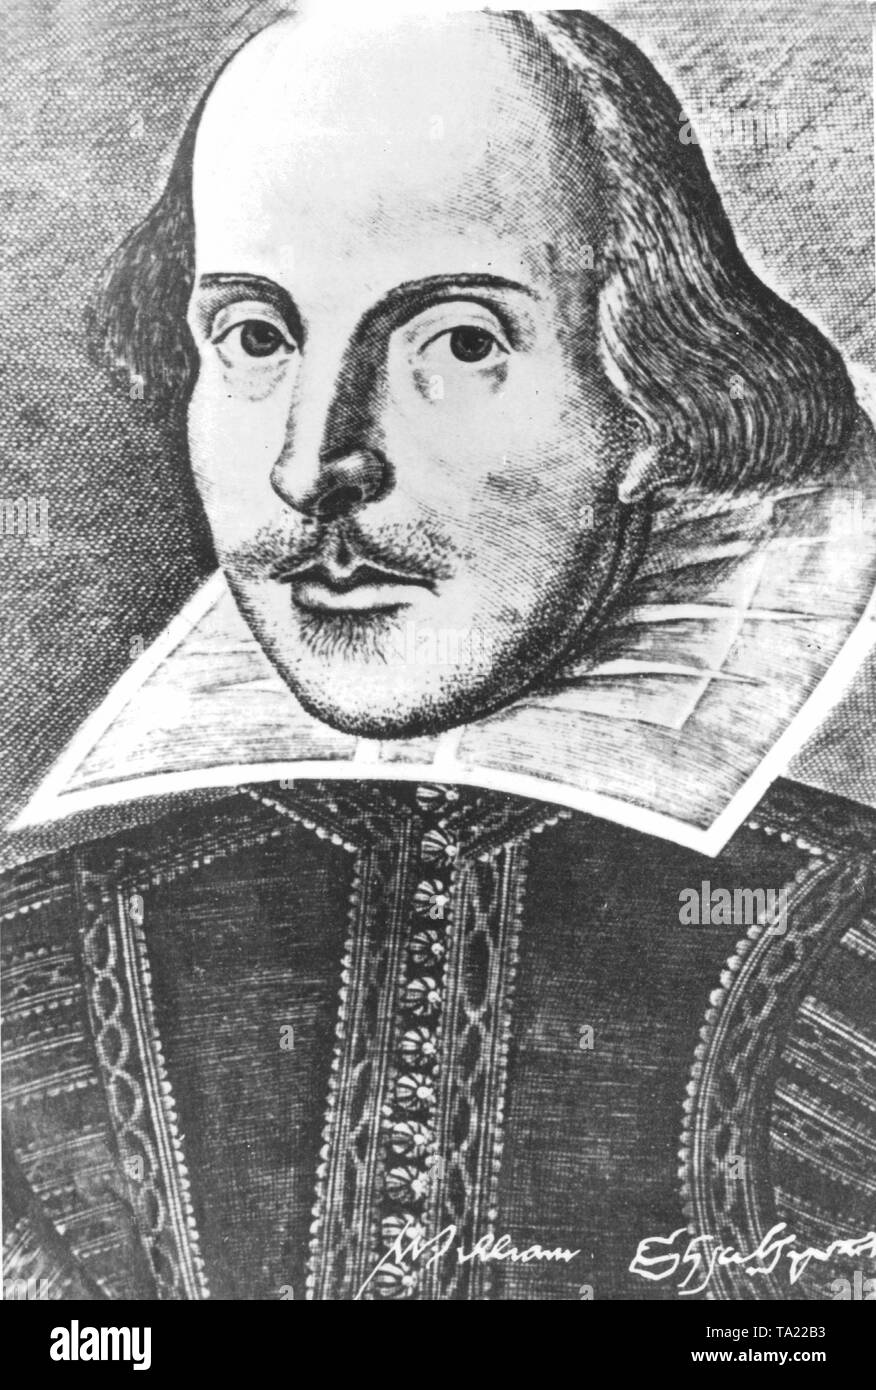 Фантастически уродливый прием драматурга 7 букв. Шекспир портрет. Шекспир портрет писателя. Абрахам Шекспир. Шекспир портрет 16 века.